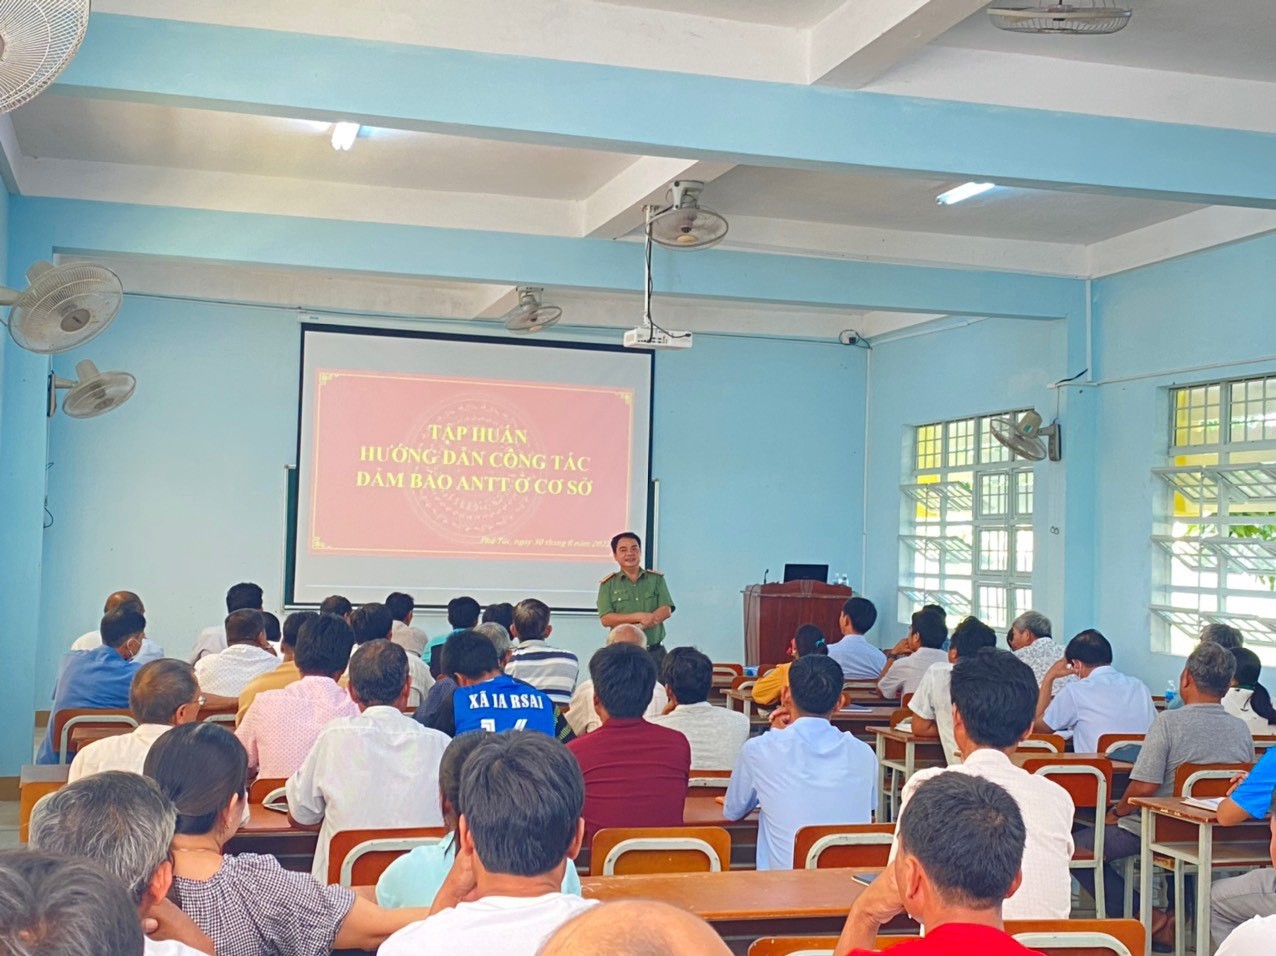 Huyện Krông Pa: tổ chức bồi dưỡng lý luận chính trị và tập huấn nghiệp vụ cho cán bộ Mặt trận Tổ quốc ở cơ sở